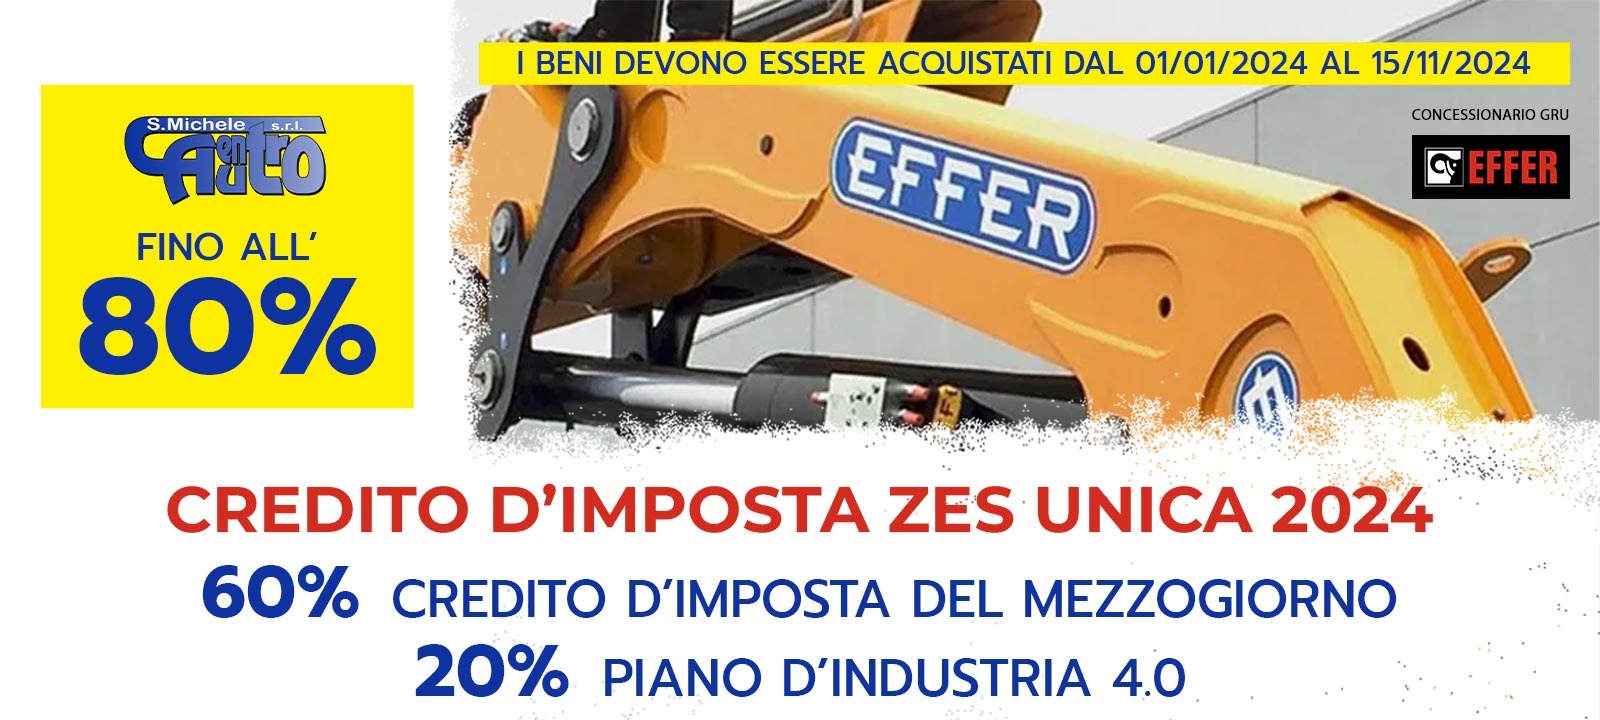 Incentivi acquisto Gru Effer 2024: Credito D’Industria 4.0 + Credito D’Imposta del Mezzogiorno fino all'80%